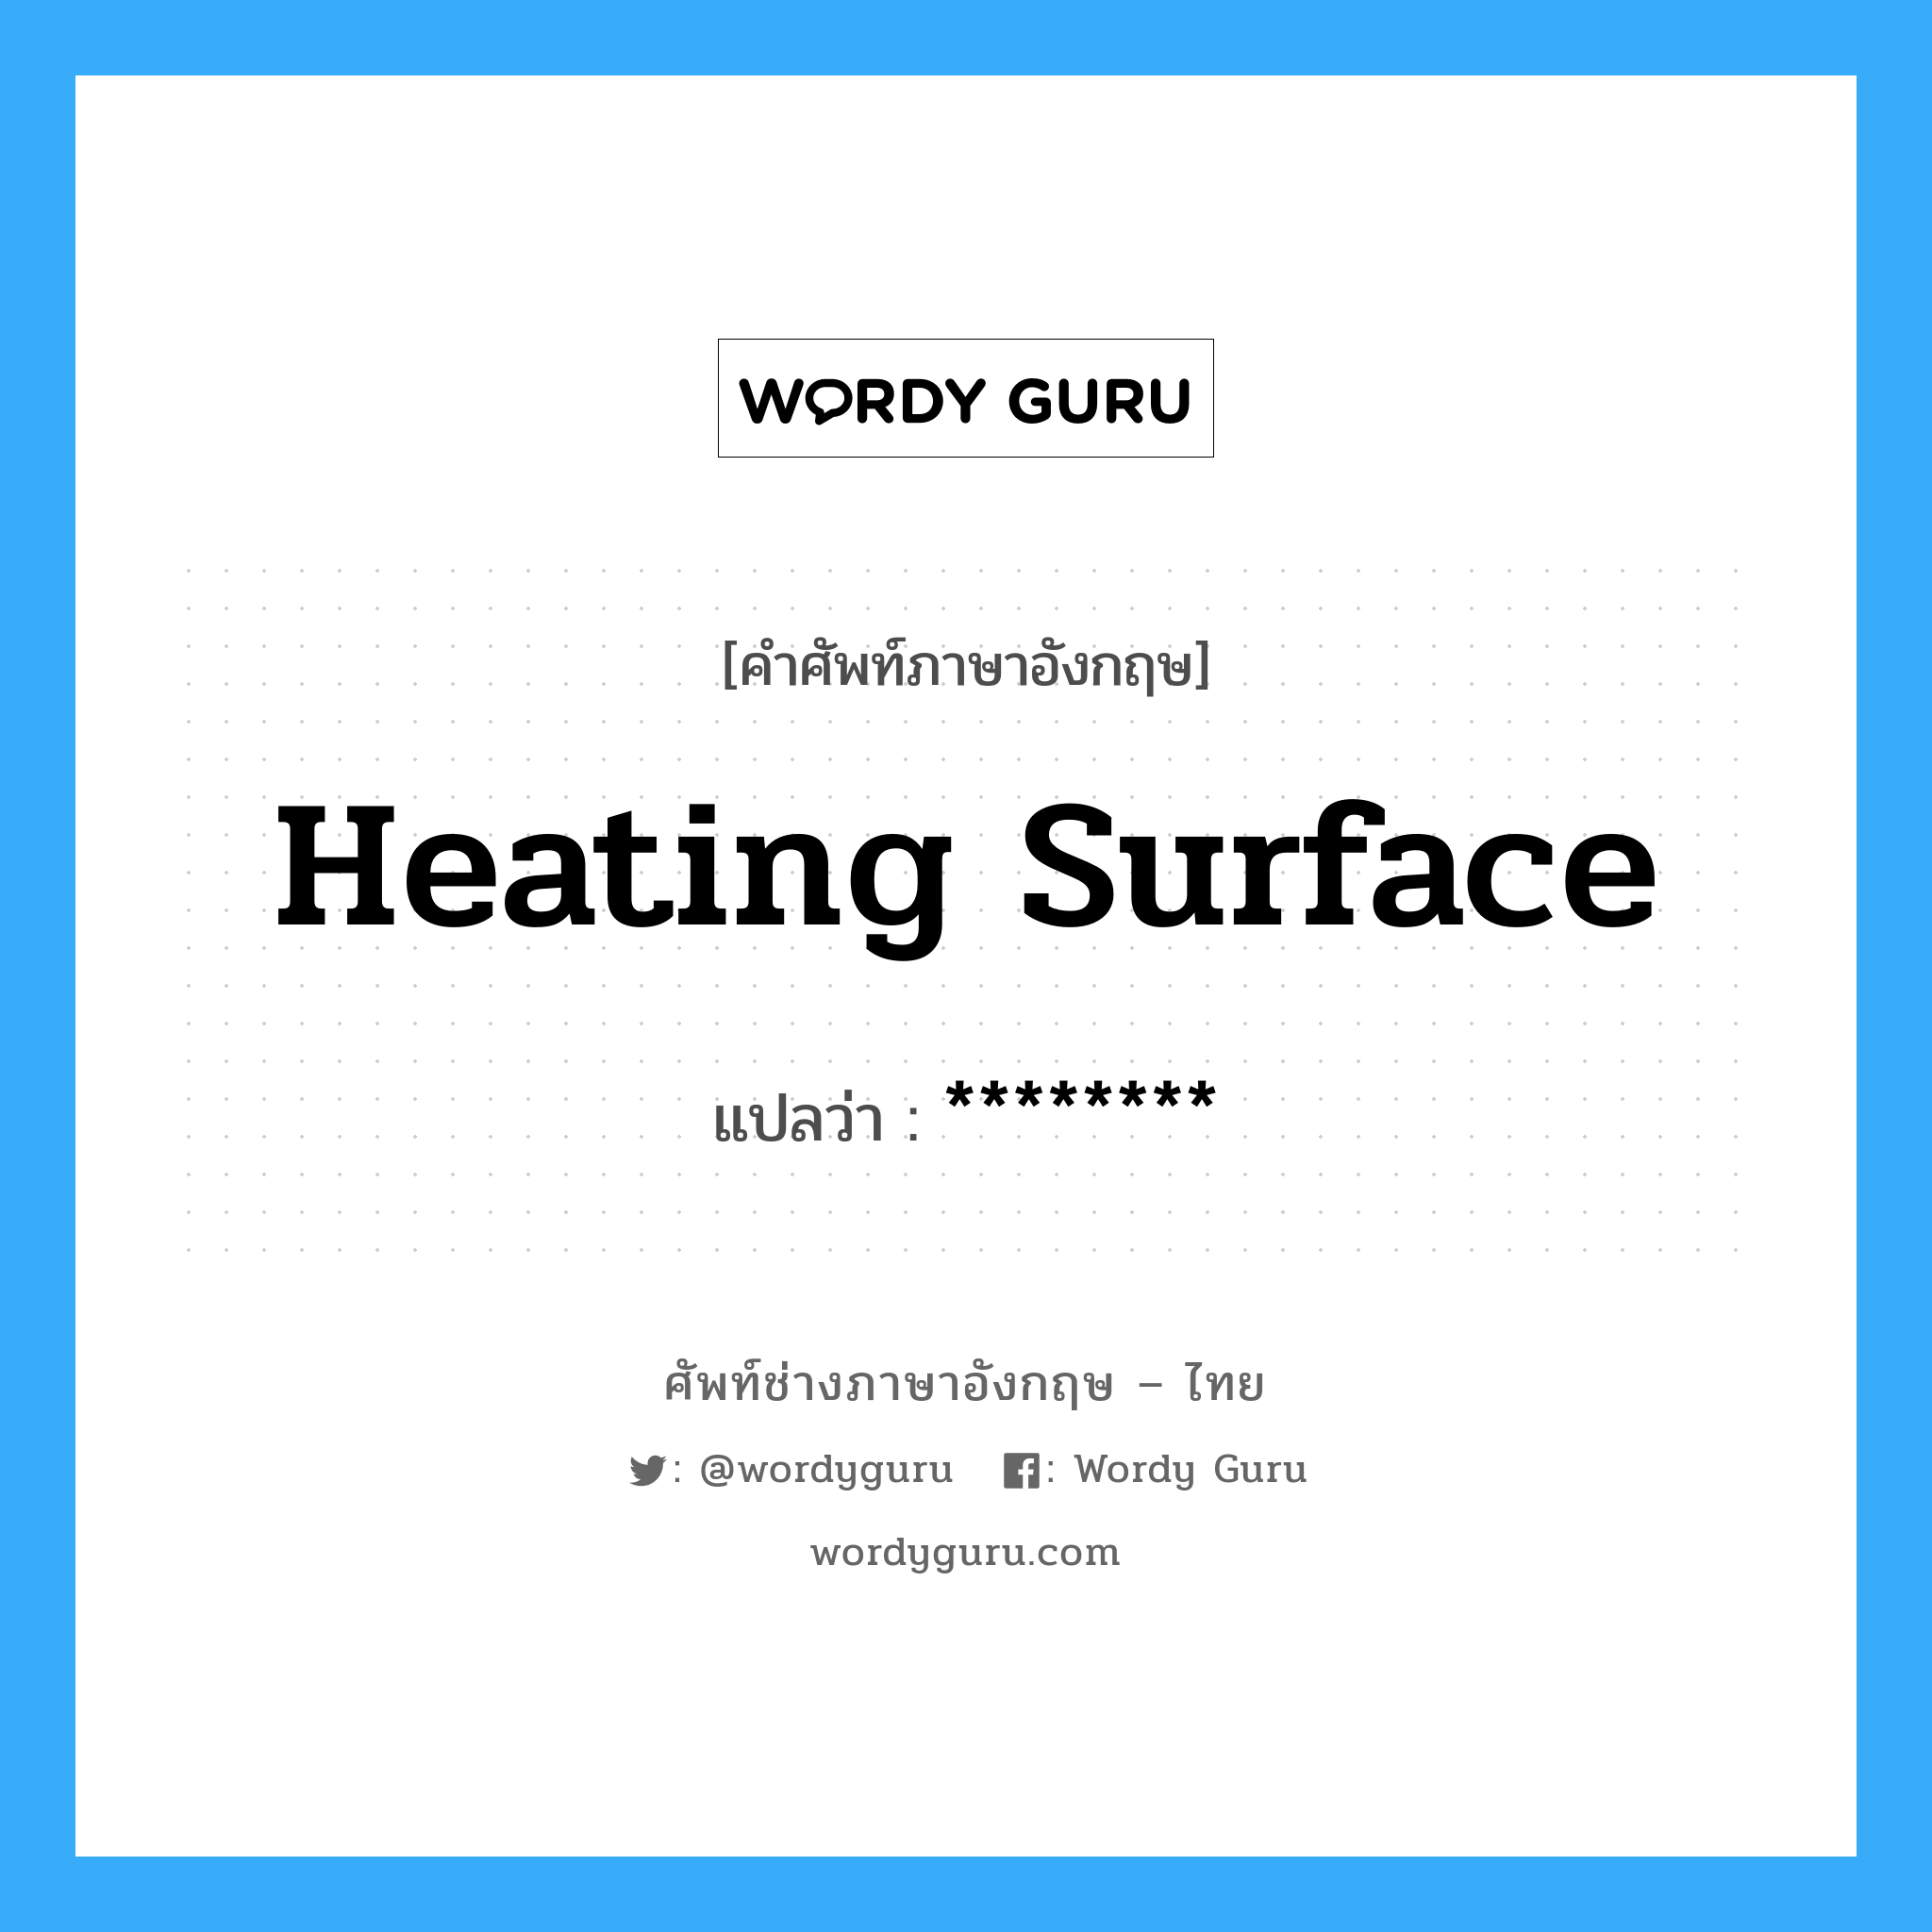 heating surface แปลว่า?, คำศัพท์ช่างภาษาอังกฤษ - ไทย heating surface คำศัพท์ภาษาอังกฤษ heating surface แปลว่า ********